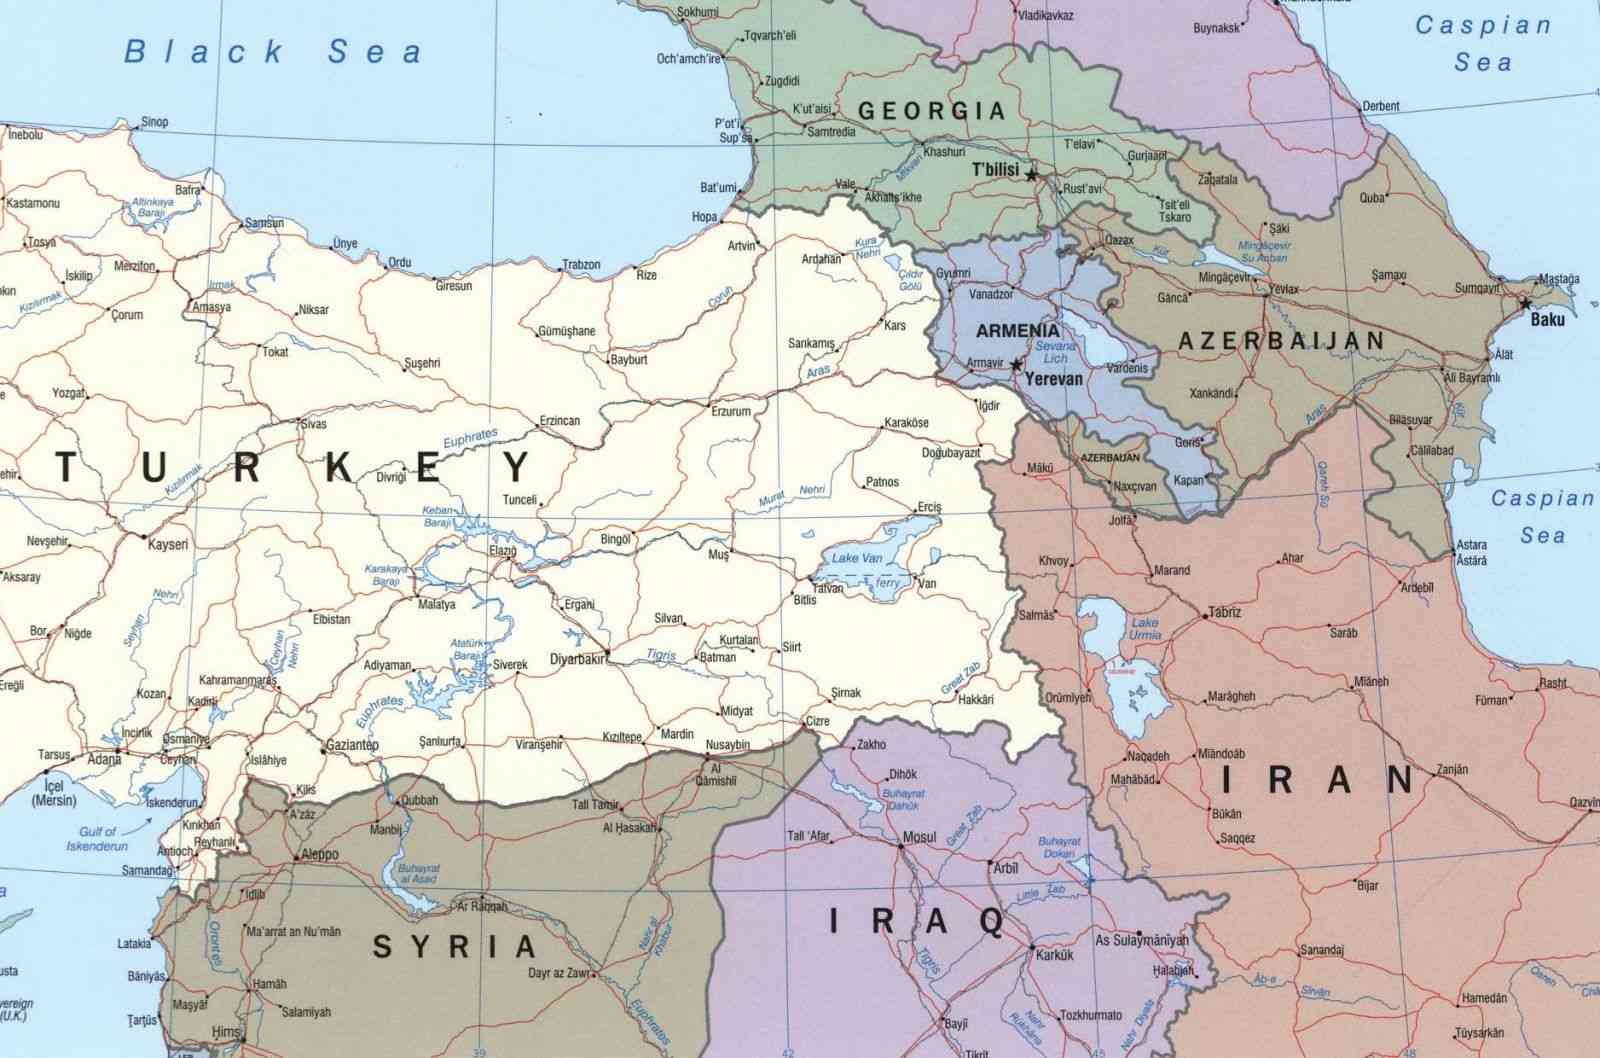 Ermenistan’dan Türkiye’ye hava sahası suçlaması